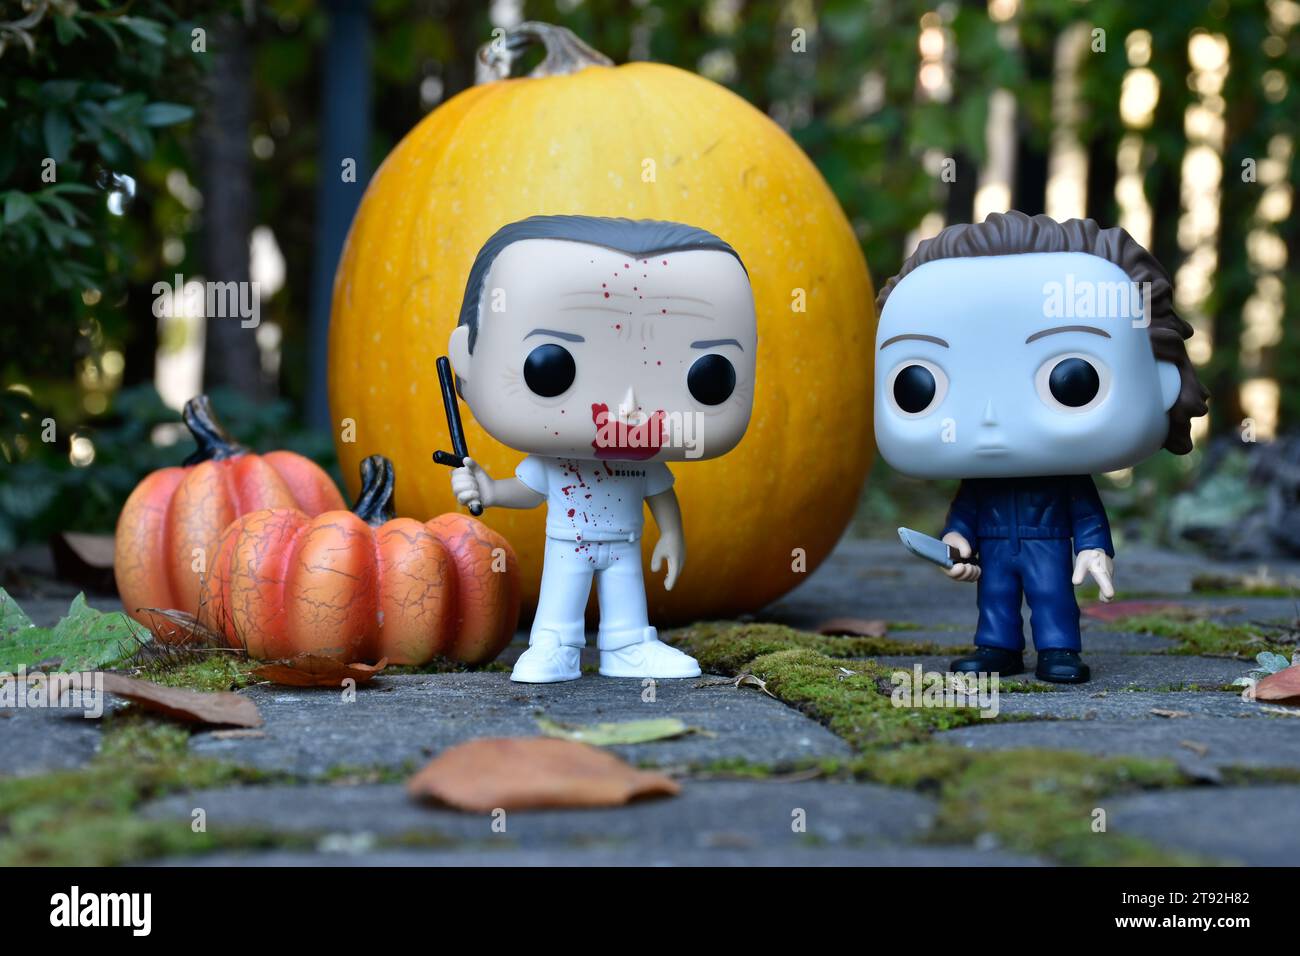 Funko Pop figurines d'action des personnages d'horreur Hannibal Lecter et Michael Myers. Halloween, saison effrayante, citrouilles, décor, mousse, jardin d'automne. Banque D'Images